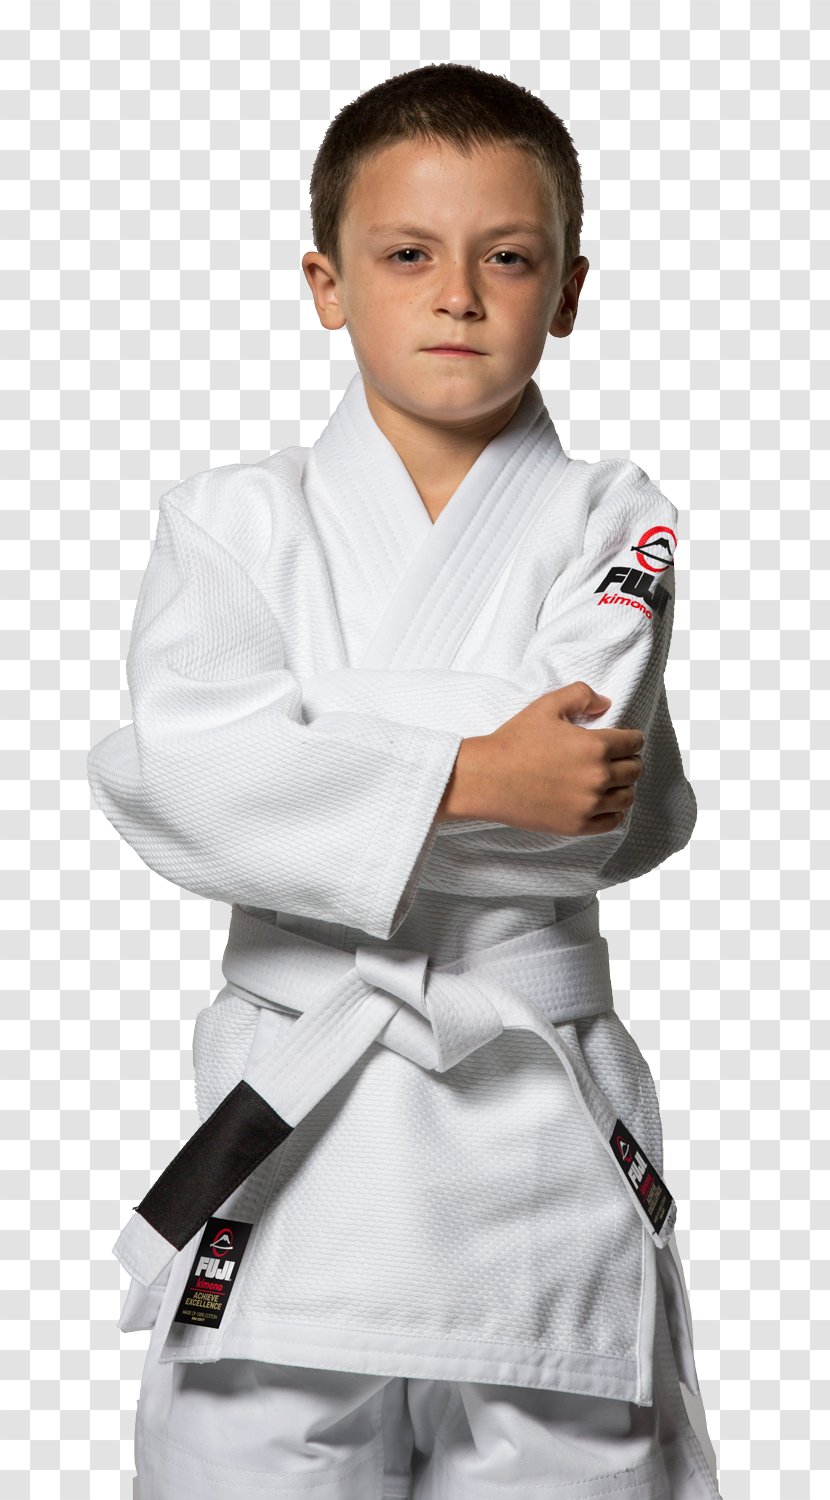 Brazilian Jiu-jitsu Gi Royler Gracie Grappling Karate - Silhouette - Judo Transparent PNG